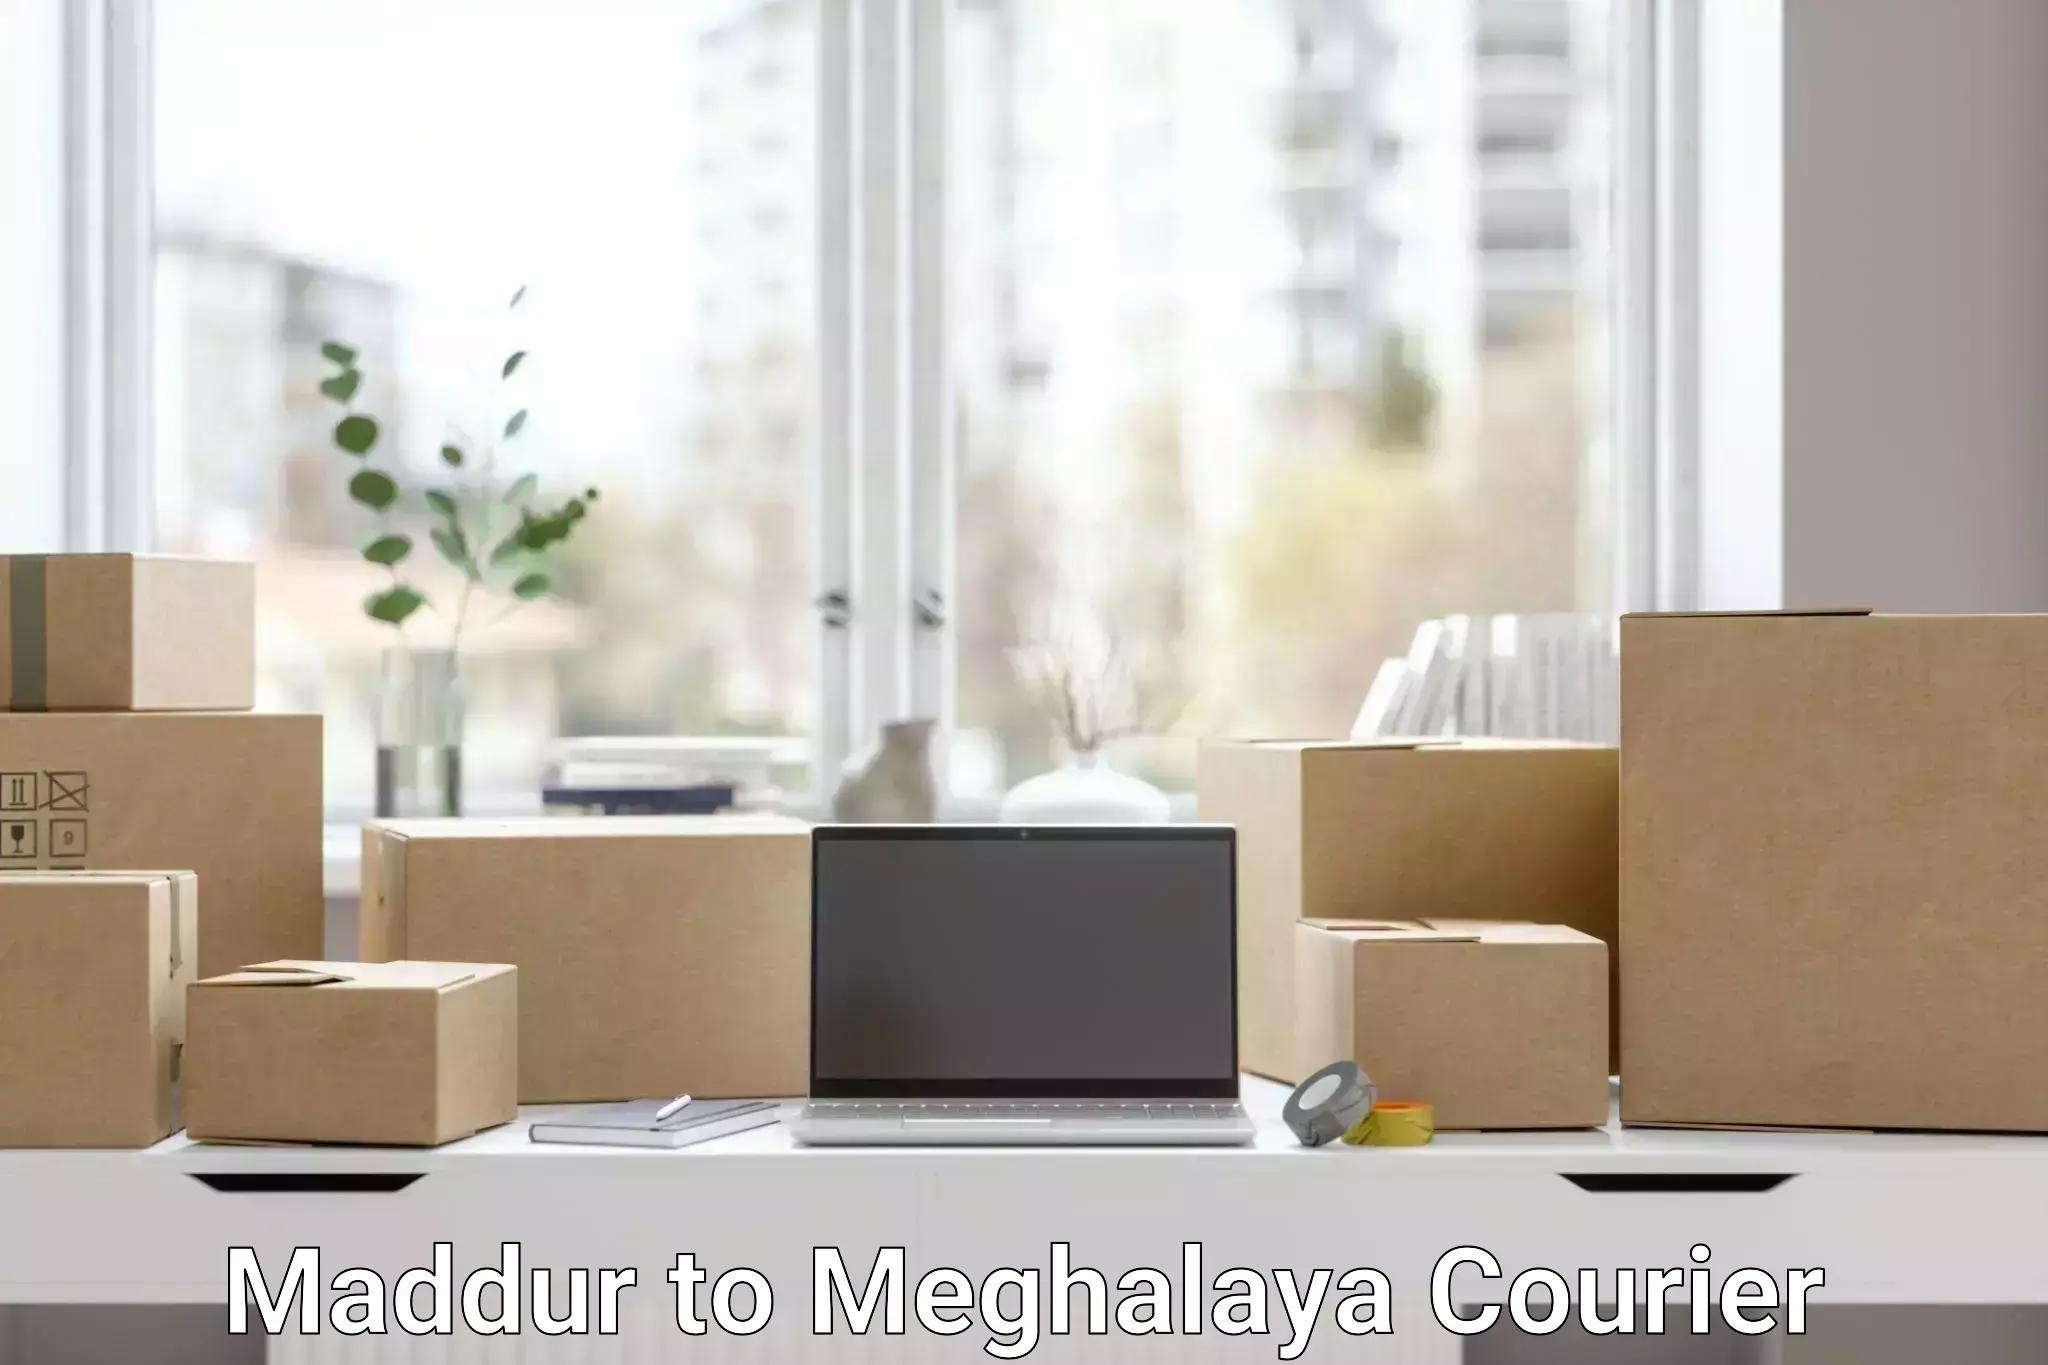 Courier tracking online Maddur to Cherrapunji